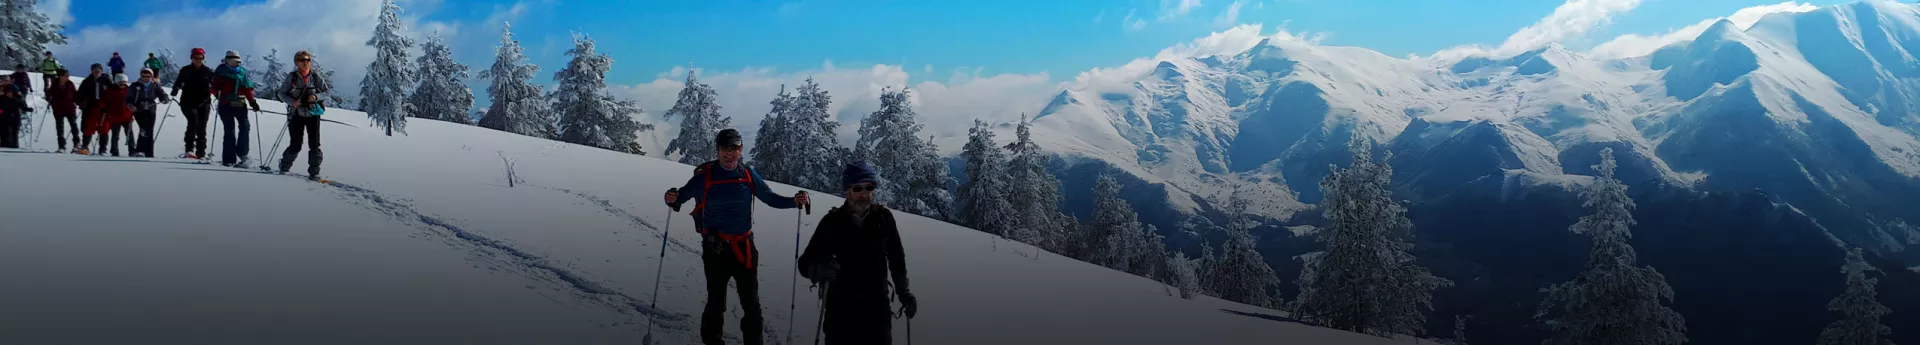 À travers un programme de sorties raquettes de tous niveaux, c’est en toute quiétude que vous pourrez découvrir la magie des Pyrénées en hiver.